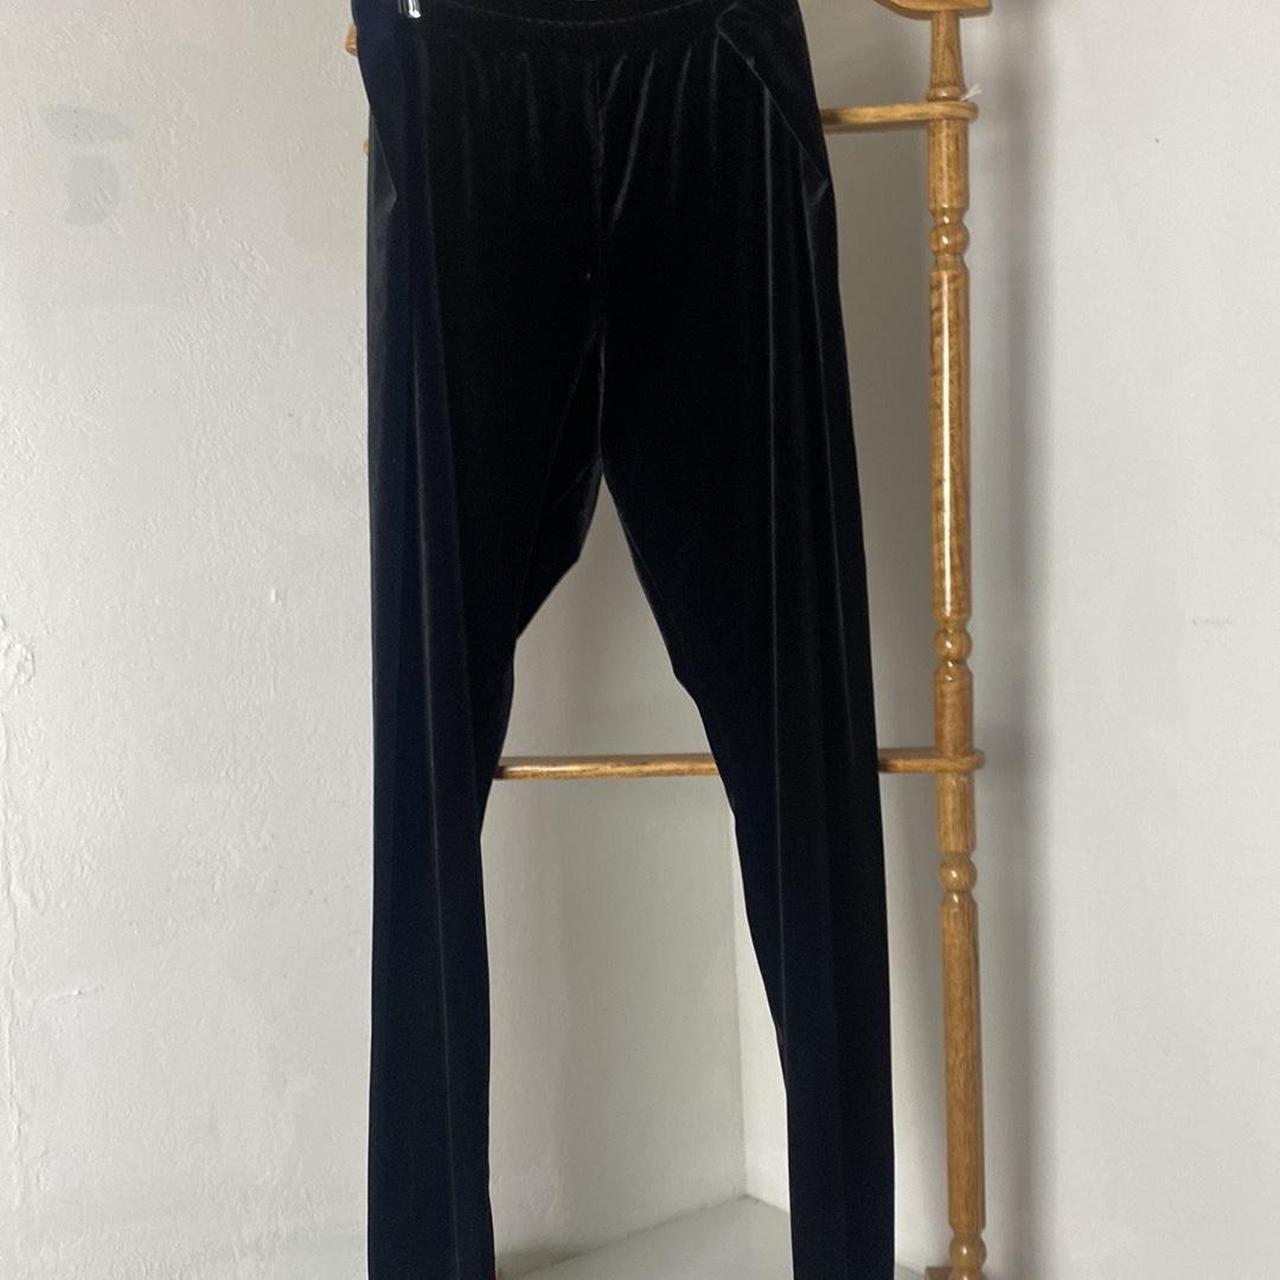 Velour leggings women's size XL in black Velour - Depop